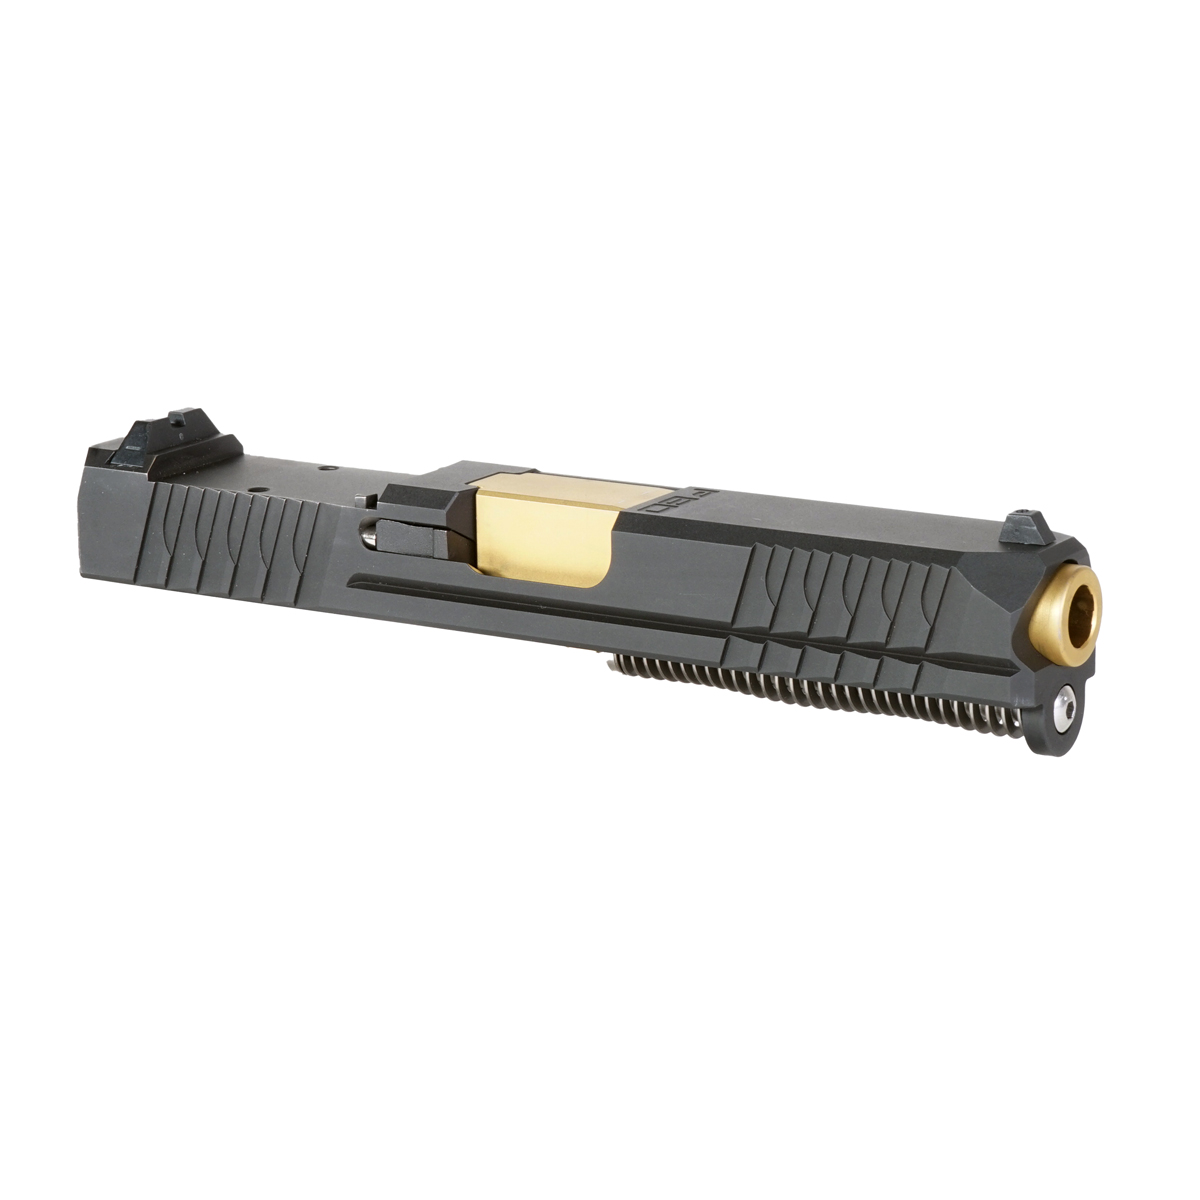 DTT 'Ares' 9mm Complete Slide Kit - Glock 19 Gen 1-3 Compatible